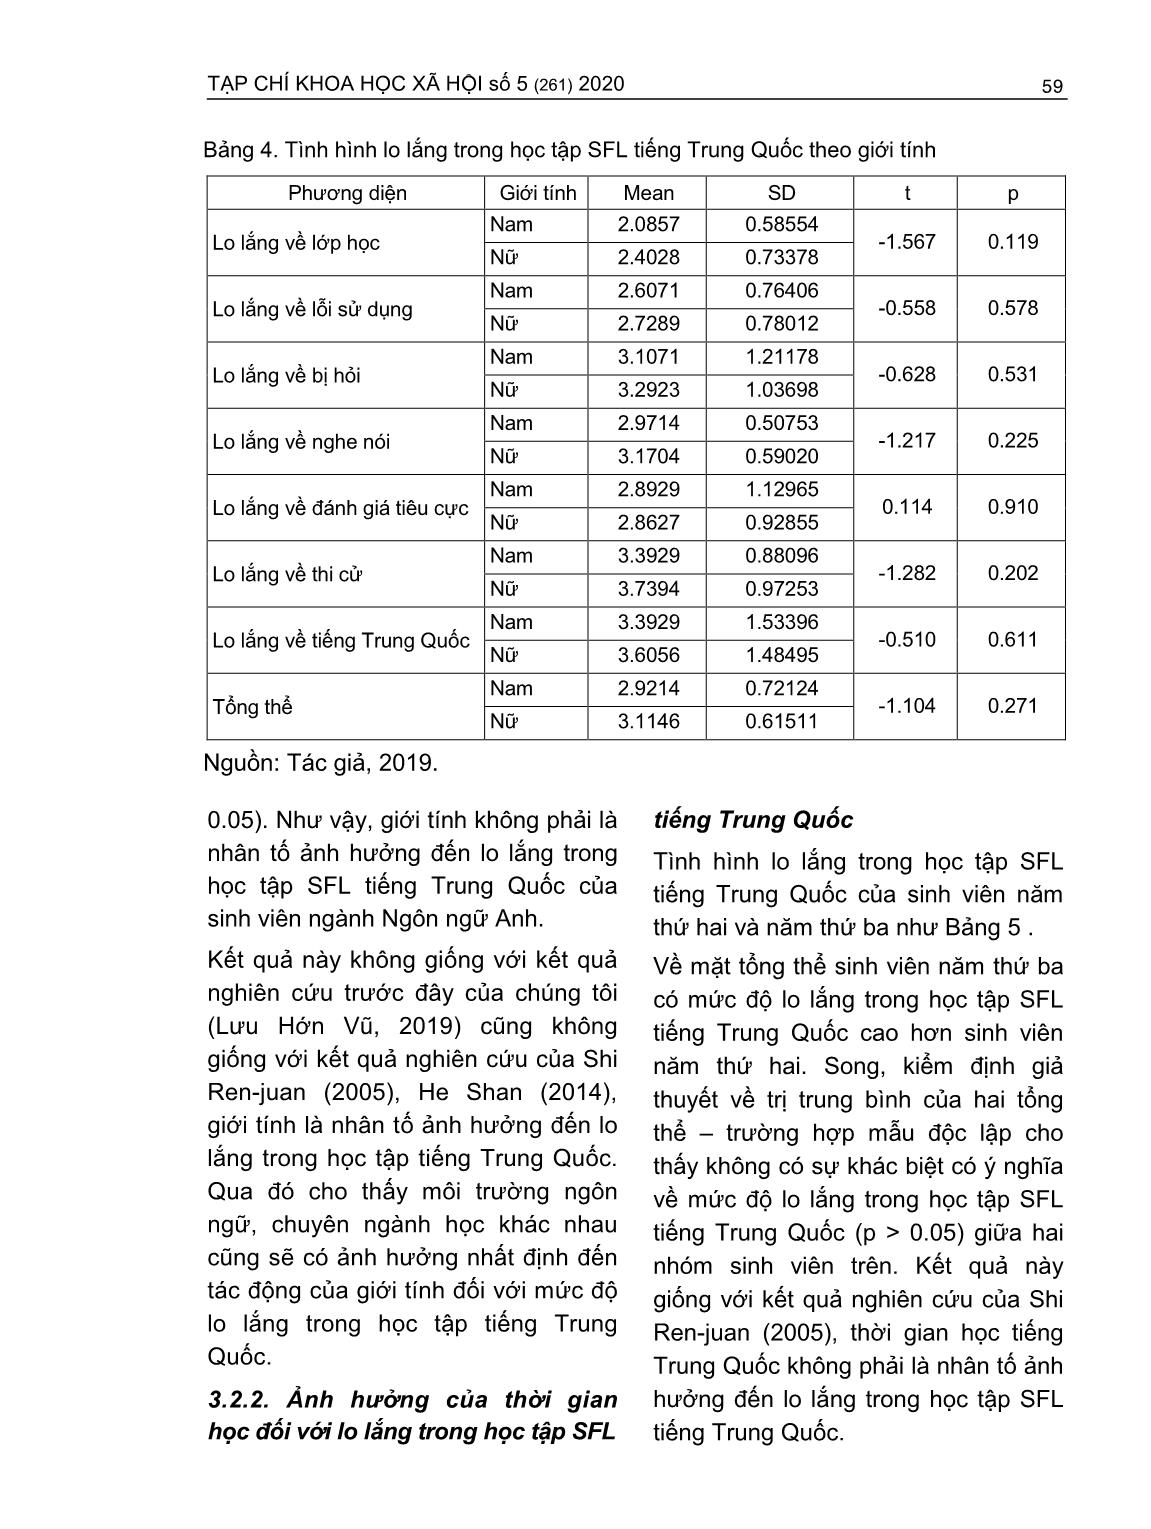 Lo lắng trong học tập tiếng Trung Quốc - Ngoại ngữ thứ hai của sinh viên ngành Ngôn ngữ anh (Trường hợp Trường Đại học Ngân hàng thành phố Hồ Chí Minh) trang 5